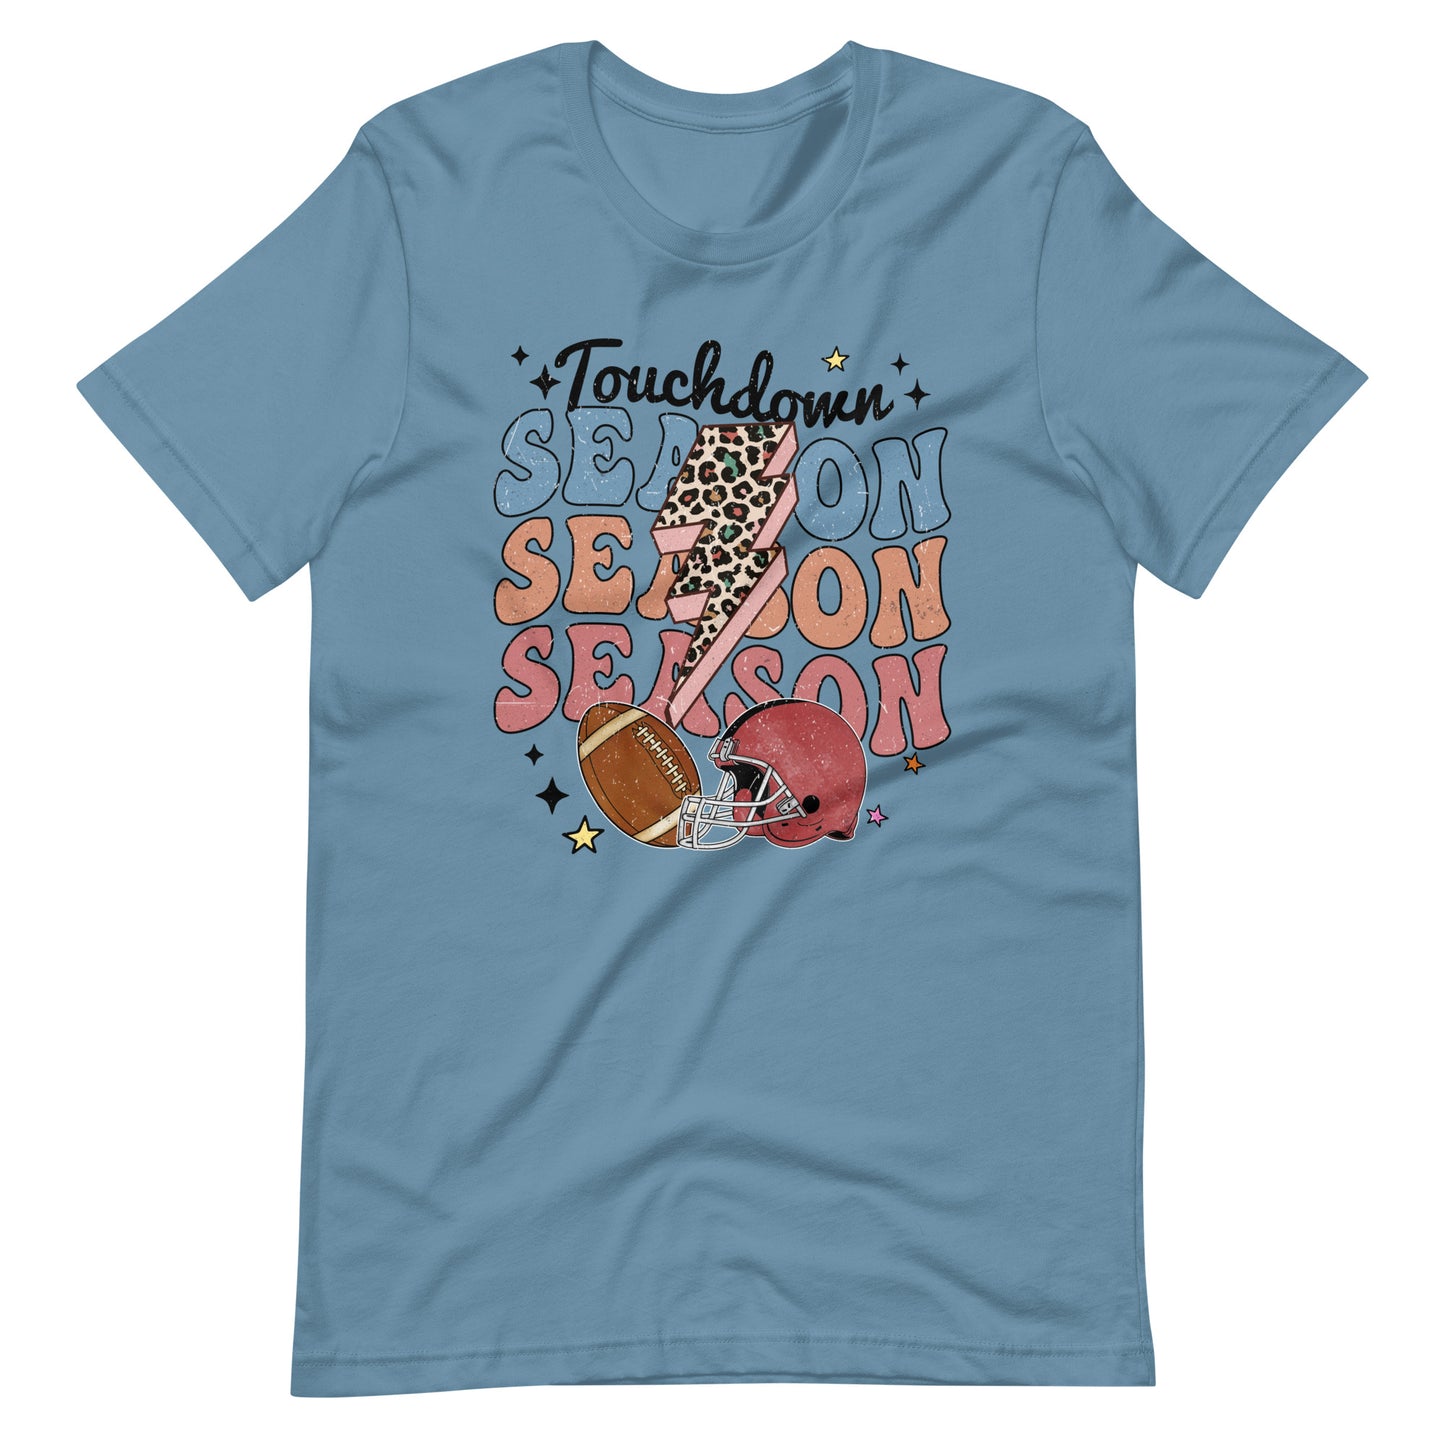 Touchdown Season t-shirt